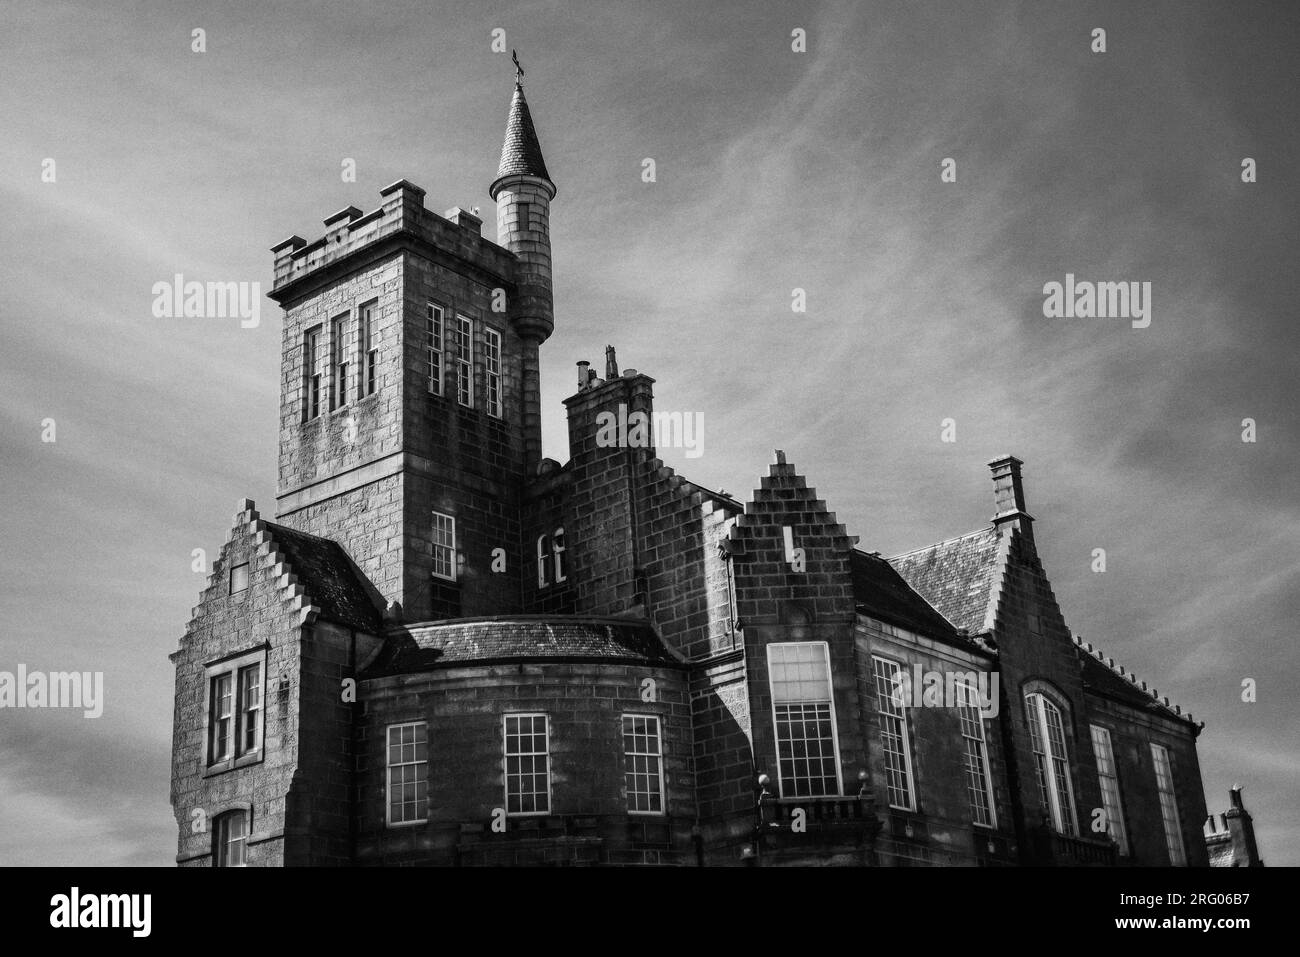 Le Dalrymple Hall à Fraserburgh, dans le nord-est de l'Écosse, par une journée ensoleillée. Le bâtiment semblable à un château, en granit gris, est représenté en noir et blanc Banque D'Images